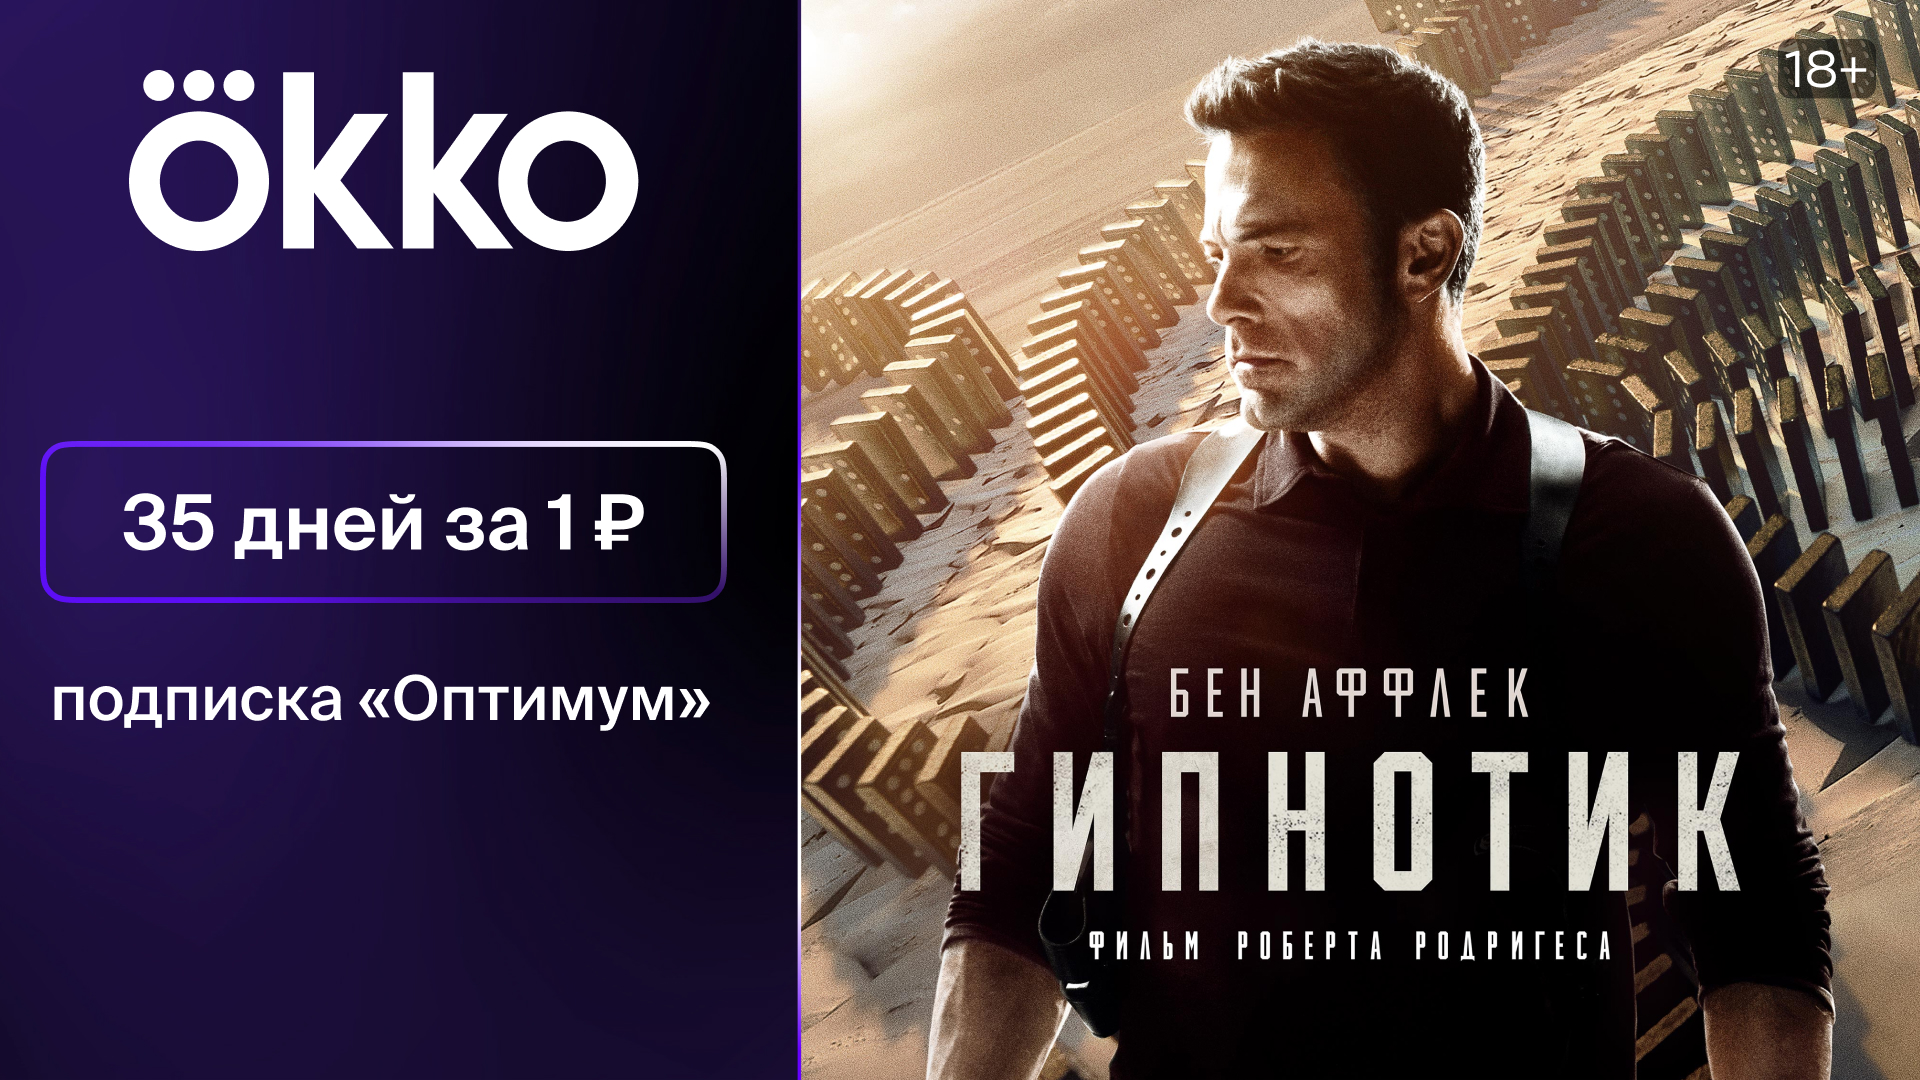 Промокод Онлайн-кинотеатр Окко — 35 дней подписки «Оптимум» на Okko за 1 руб.